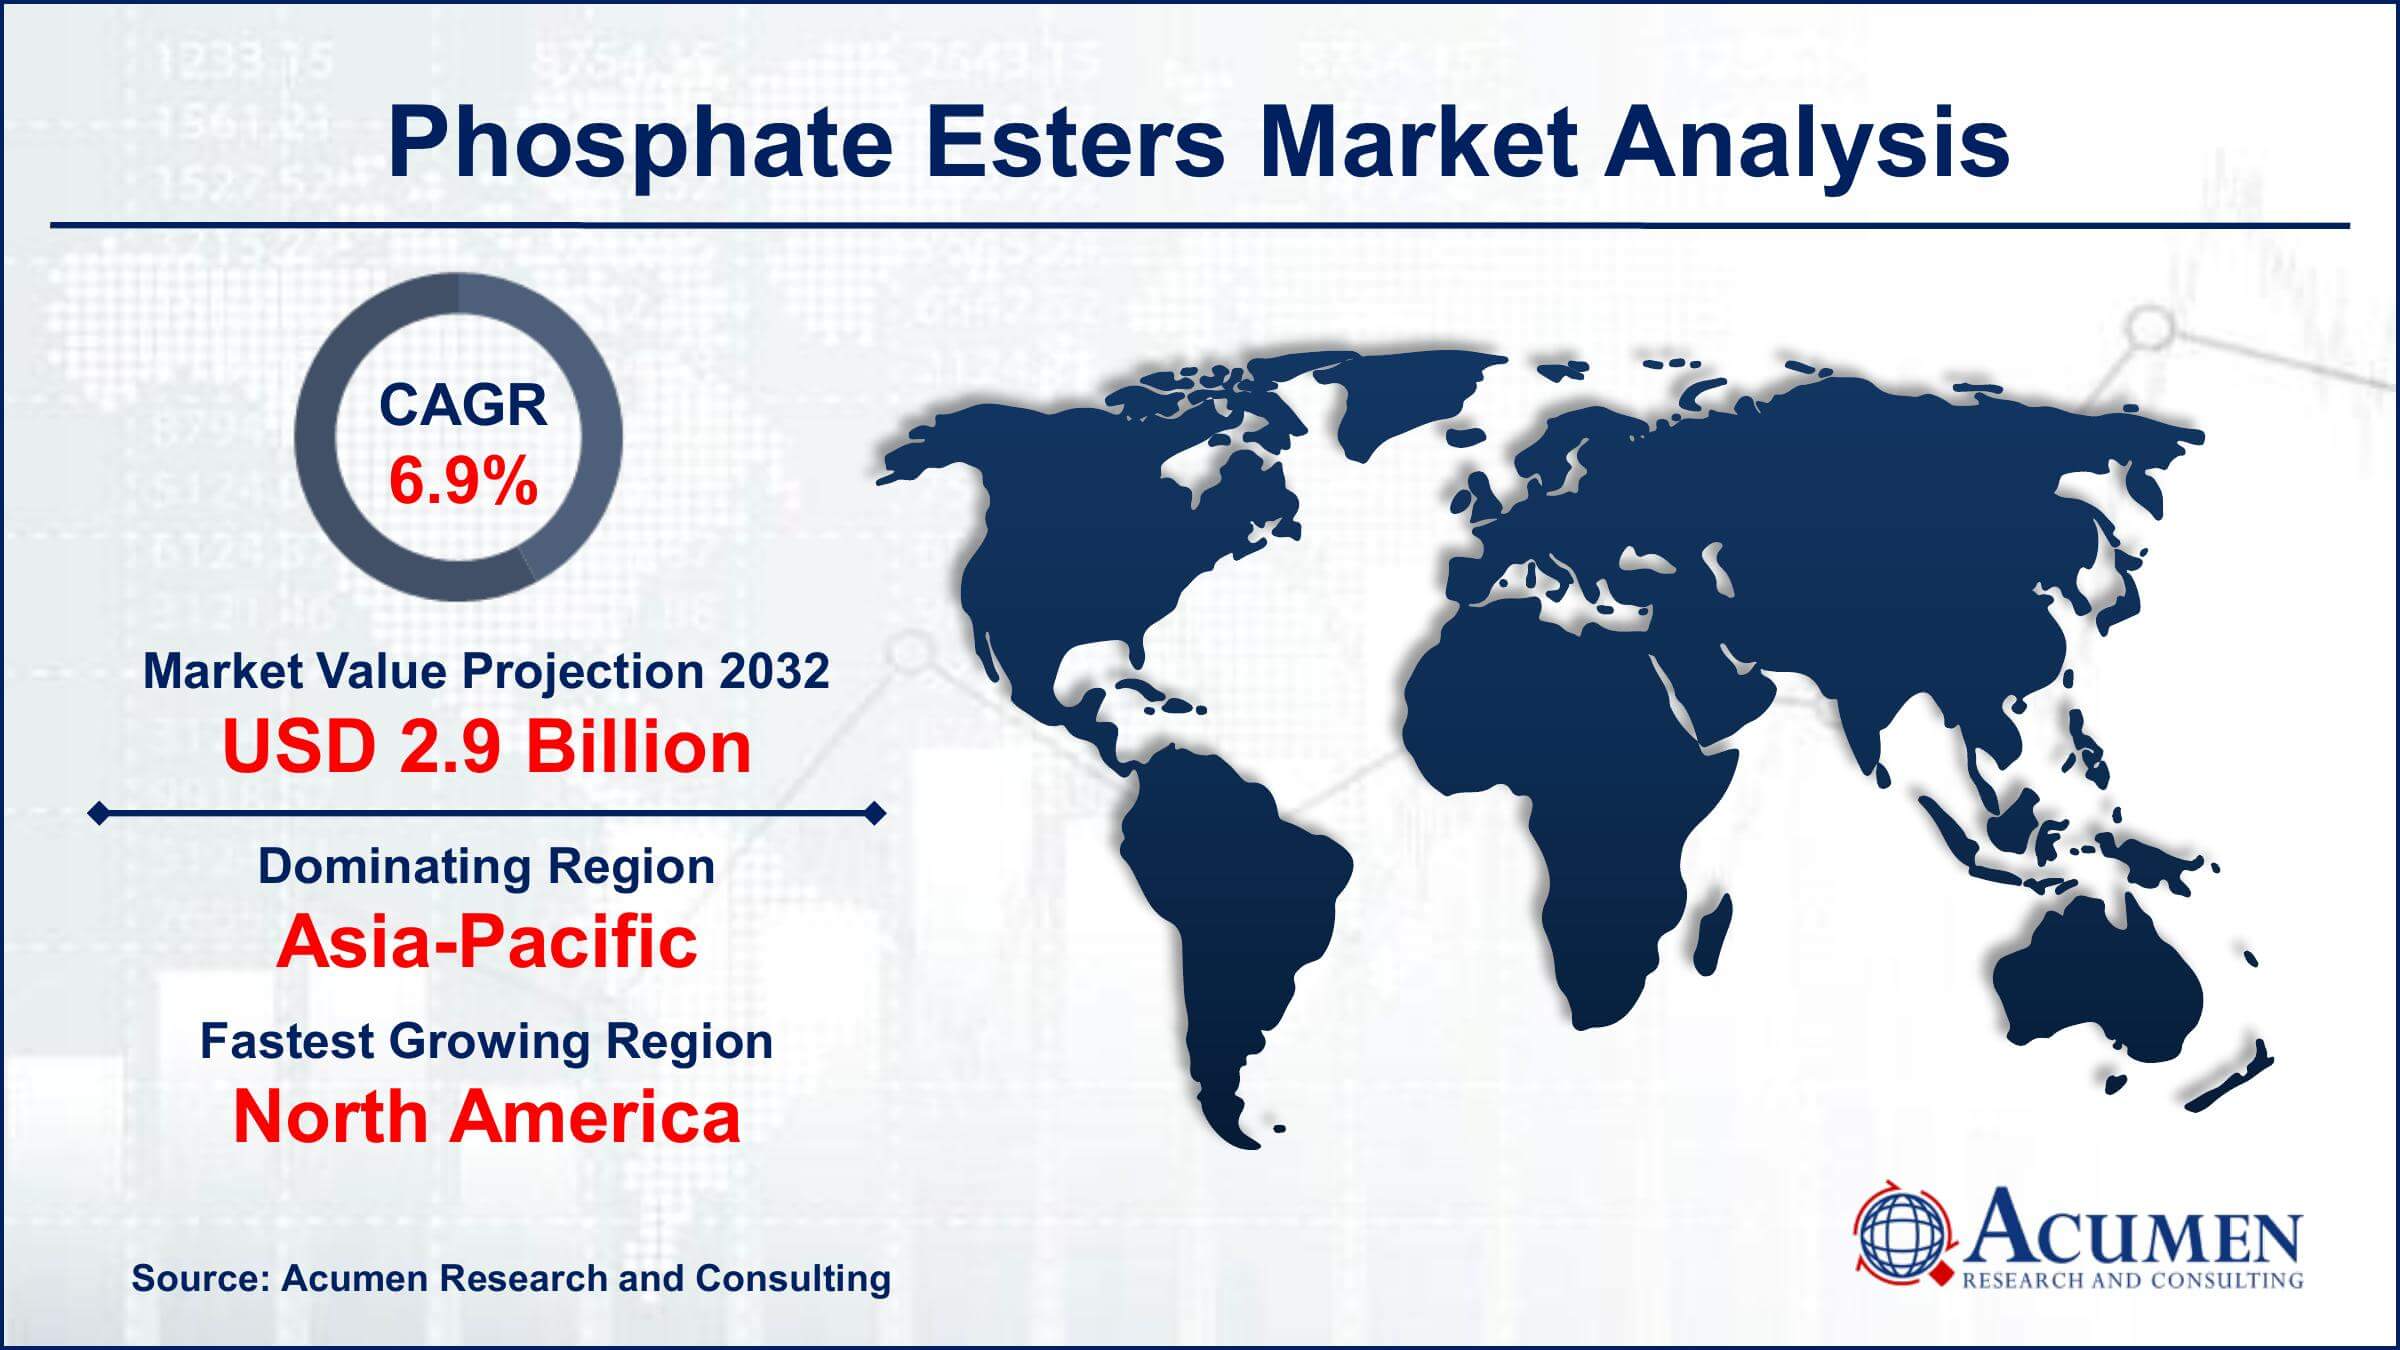 Global Phosphate Esters Market Trends